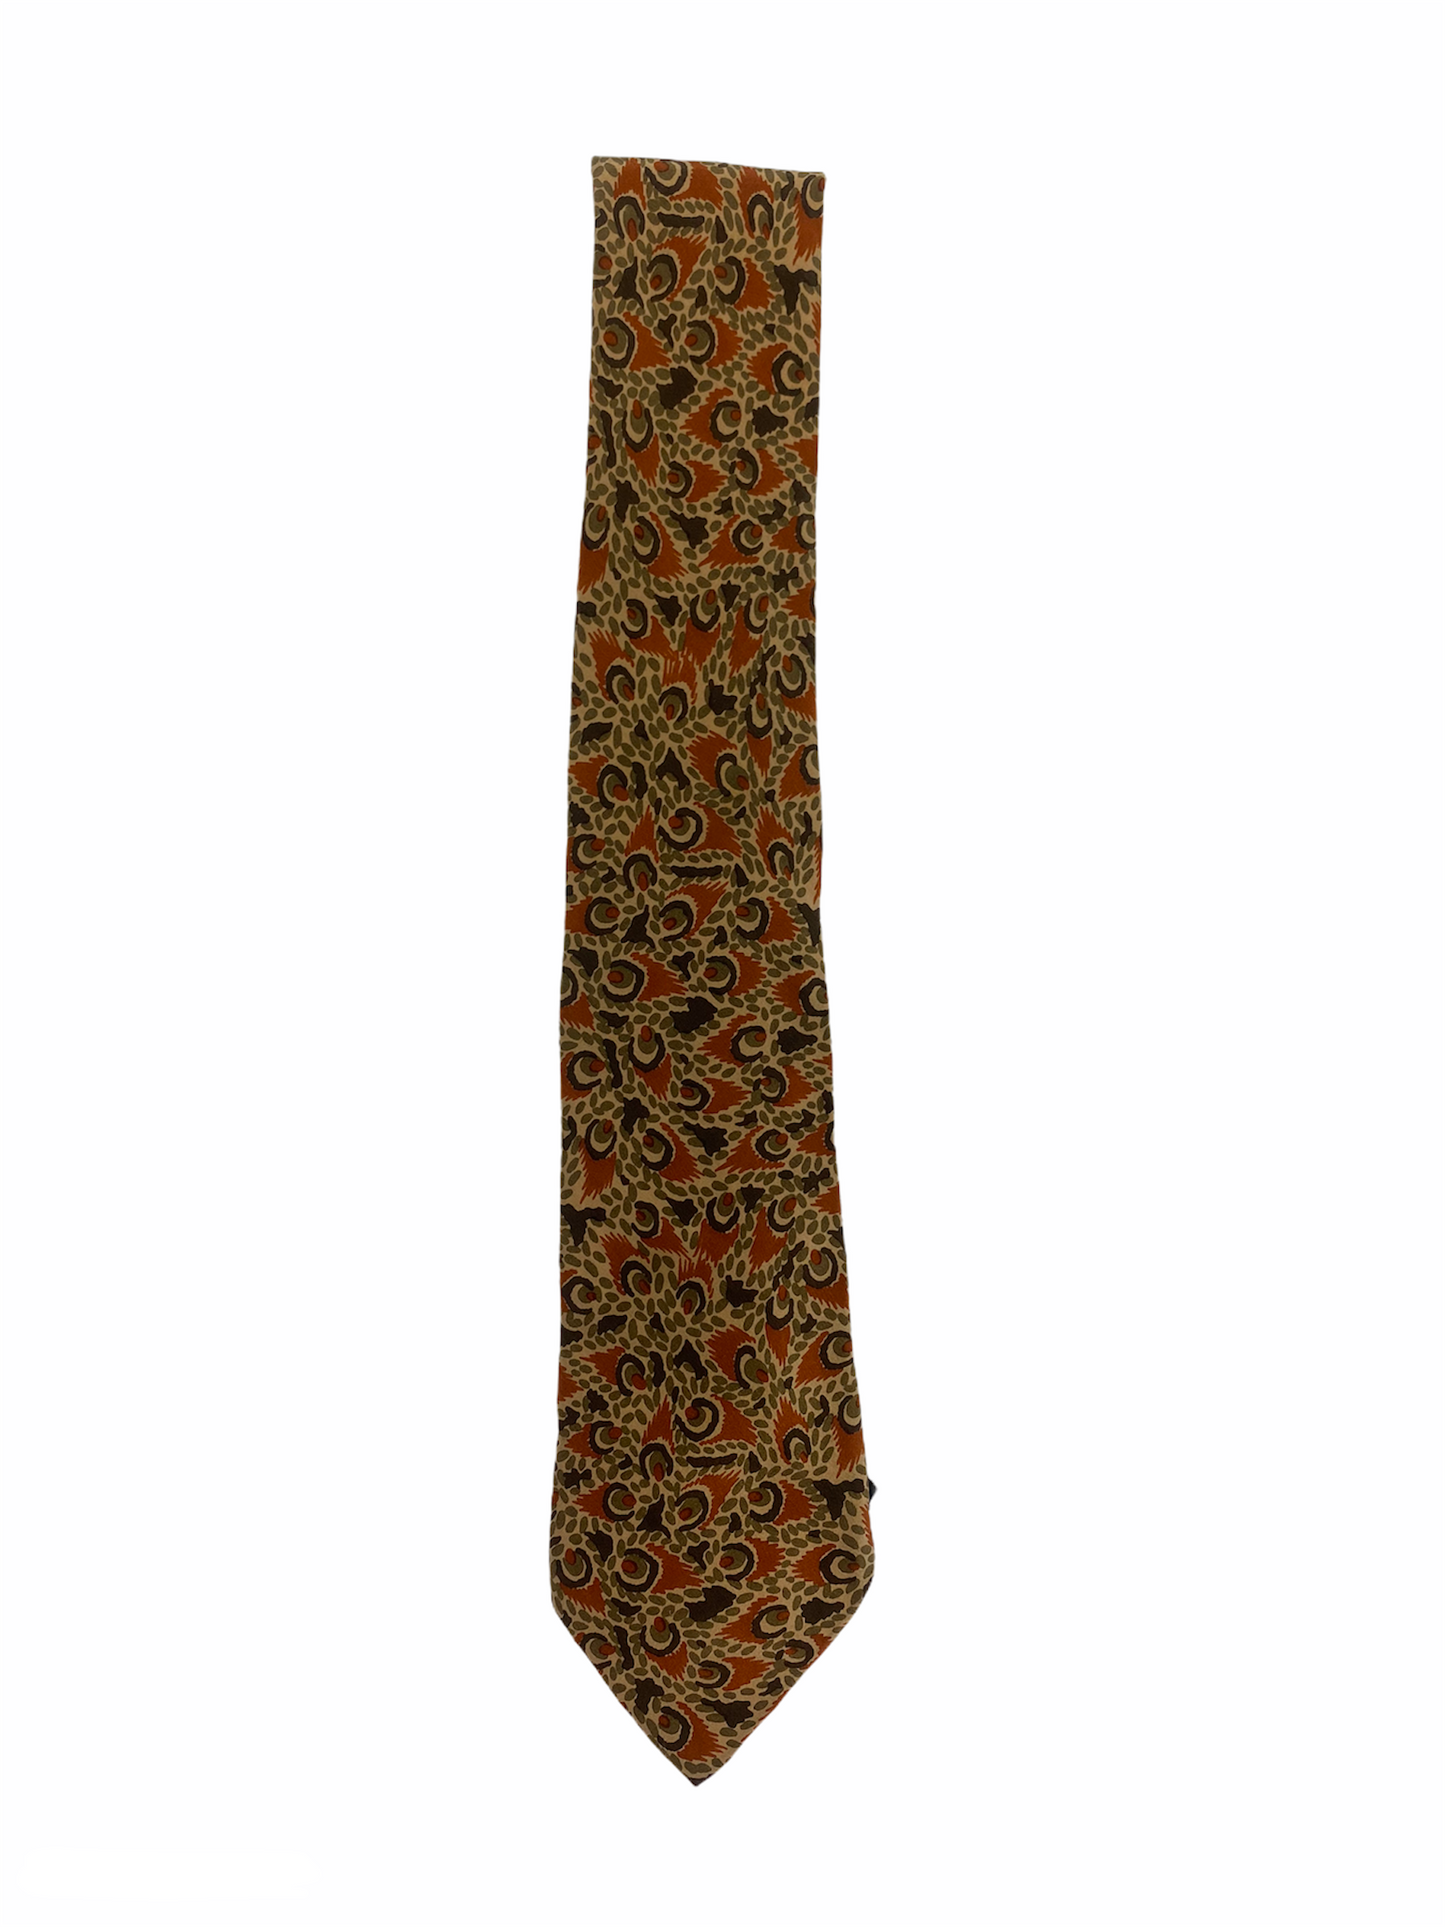 Cravate Dior en soie 100% au motif fleuri et à la couleur dominante marron.